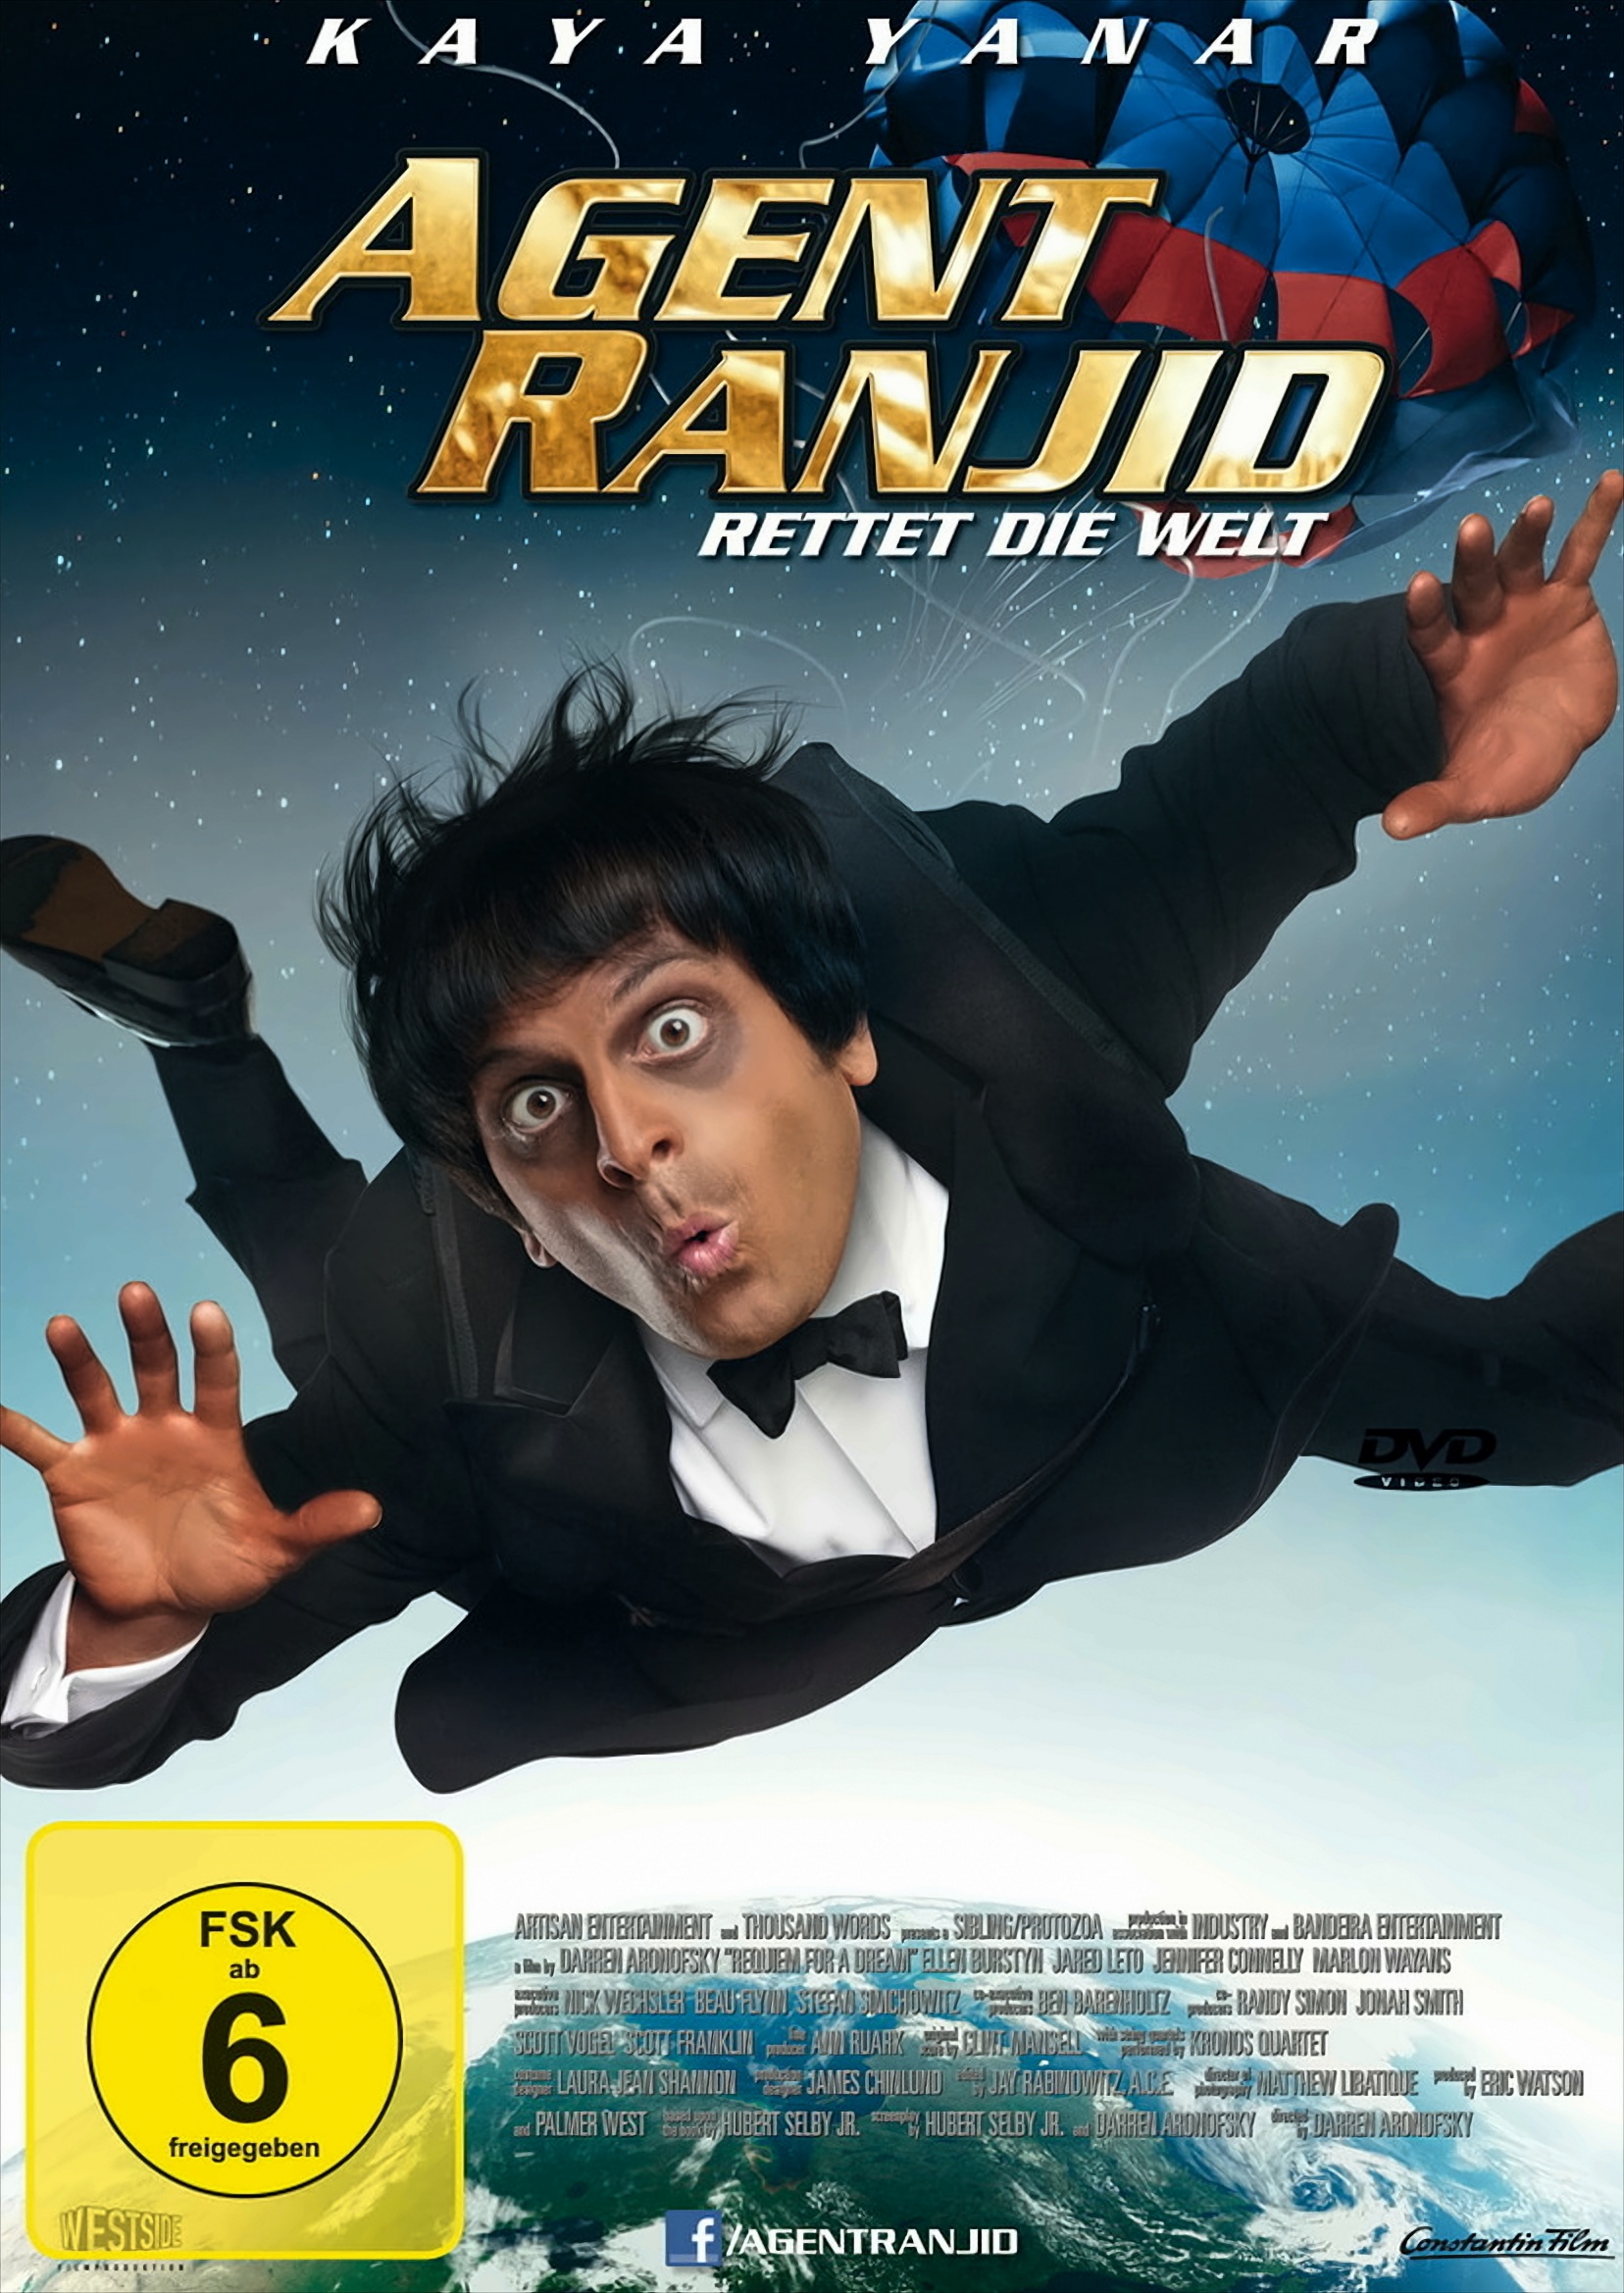 Agent Ranjid rettet die Welt von Universal Pictures